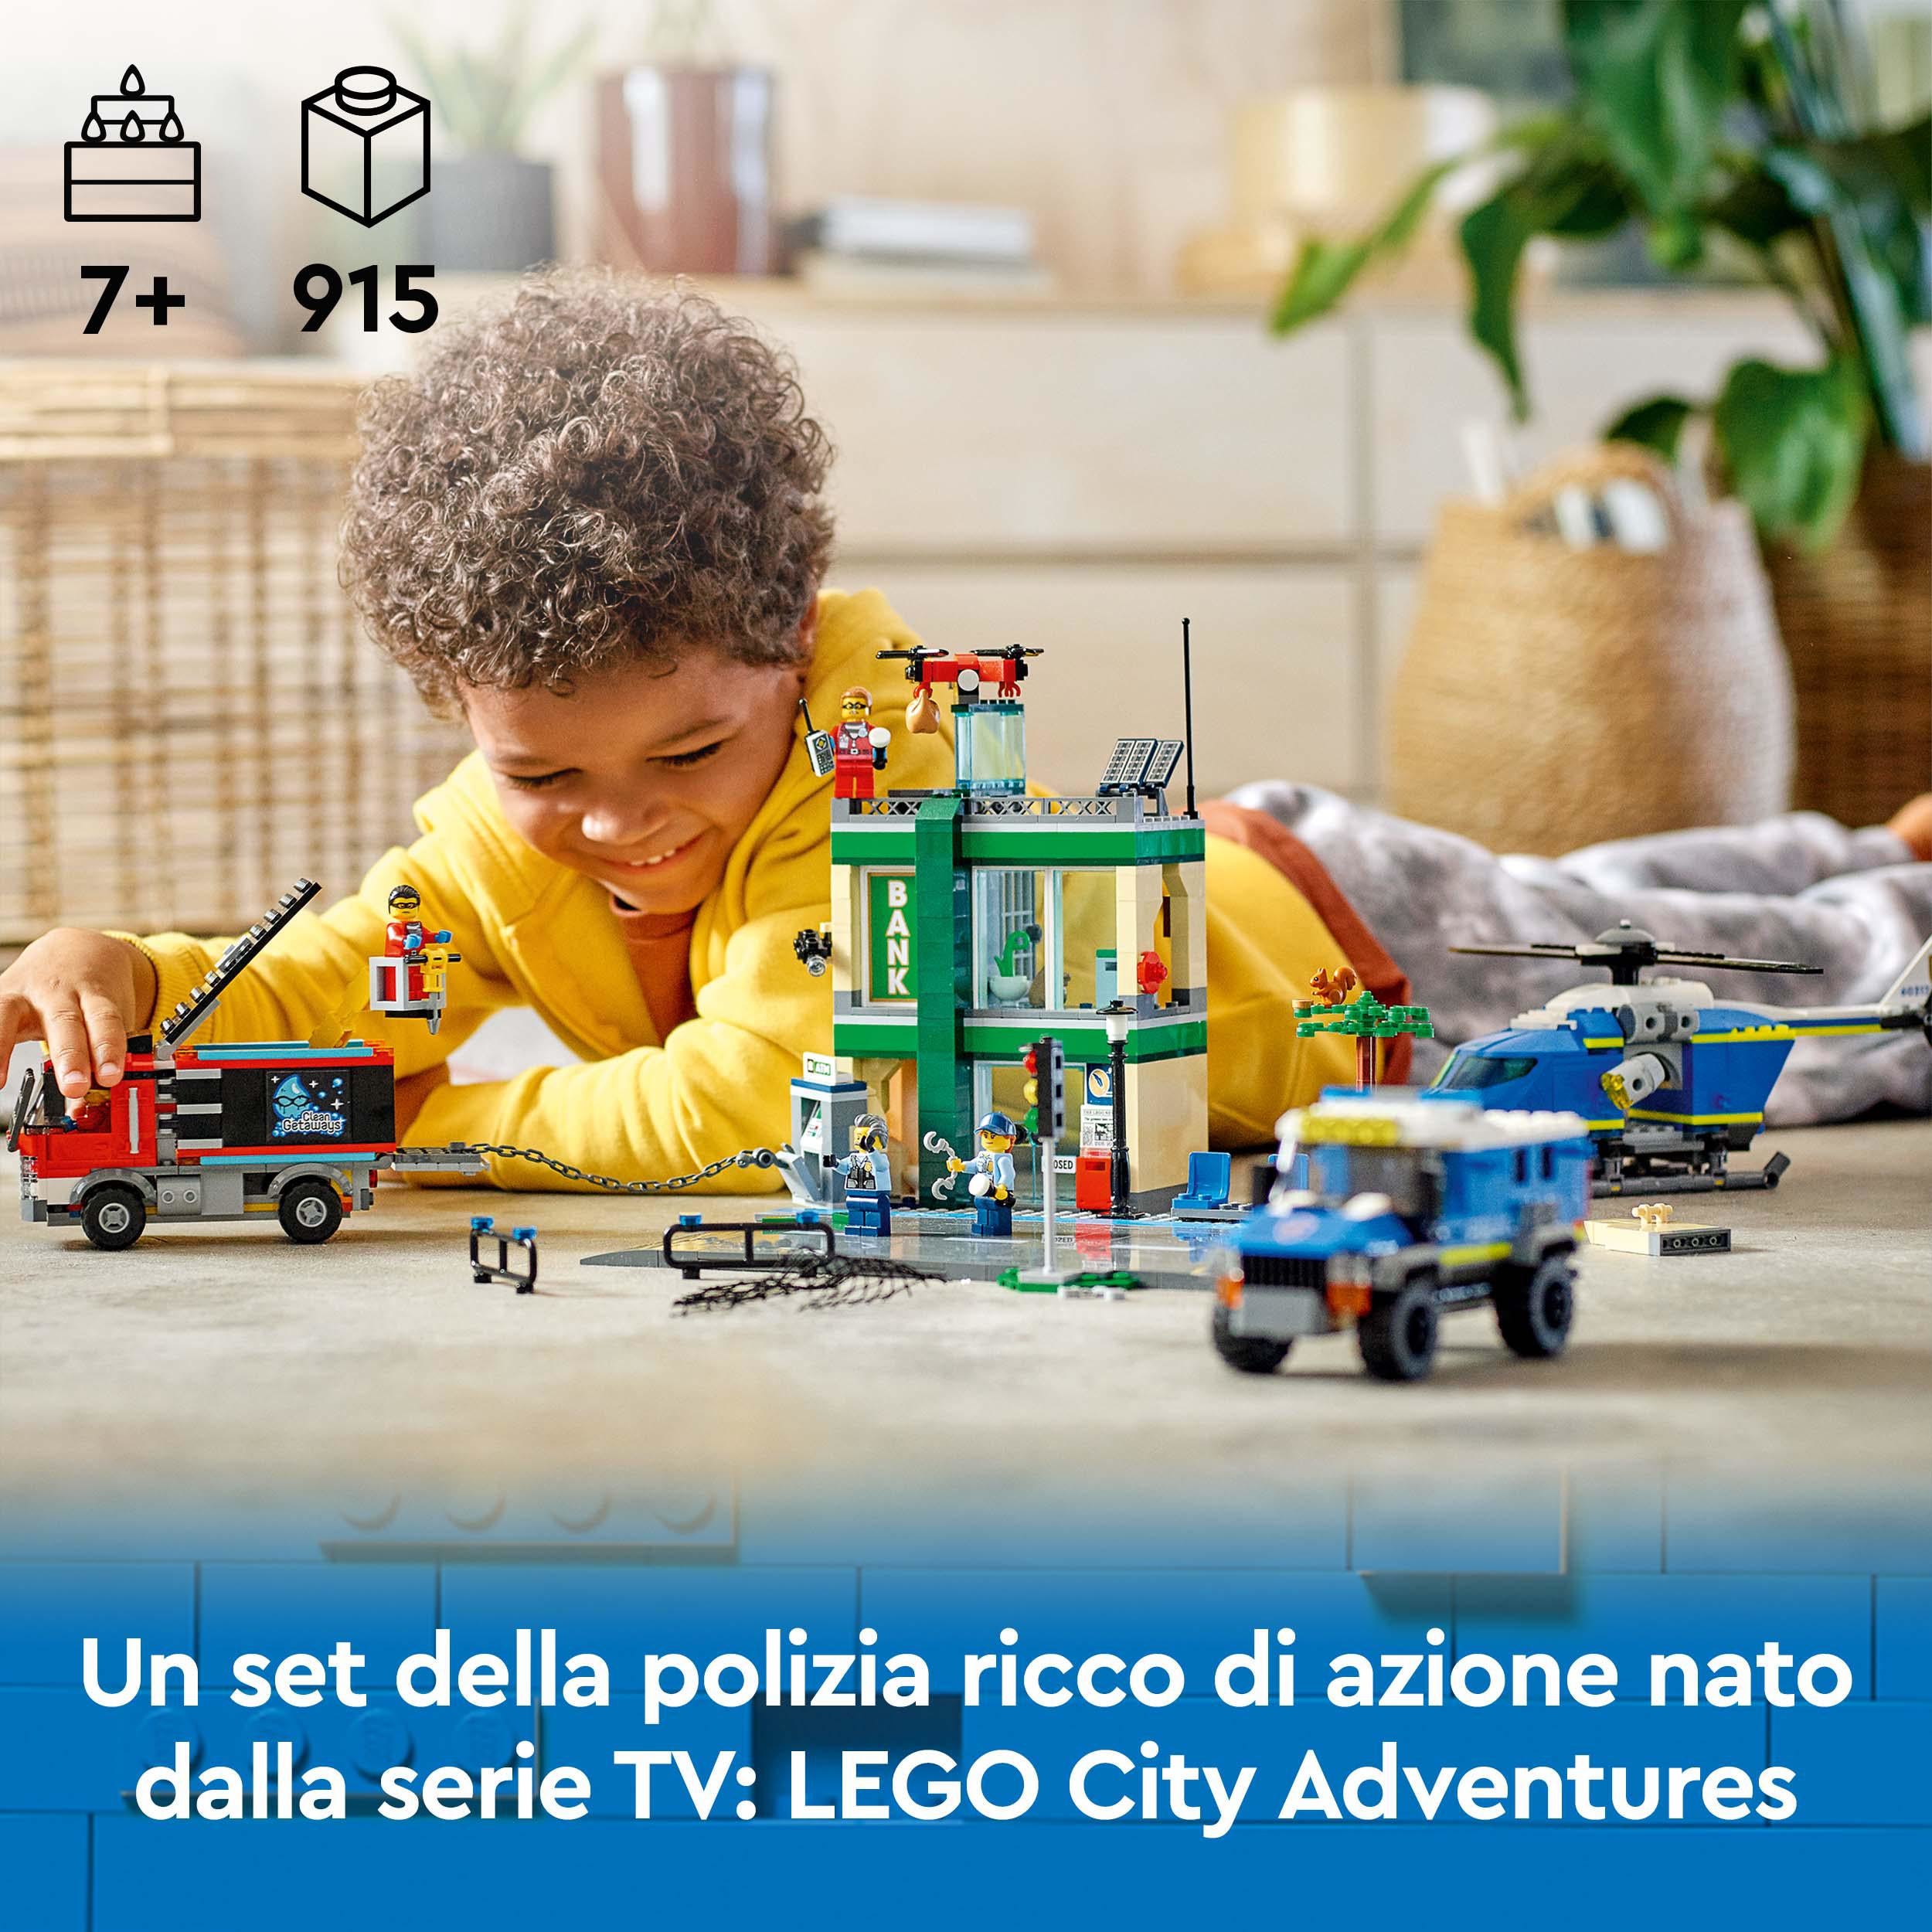 60317 LEGO® City - Inseguimento della polizia alla banca